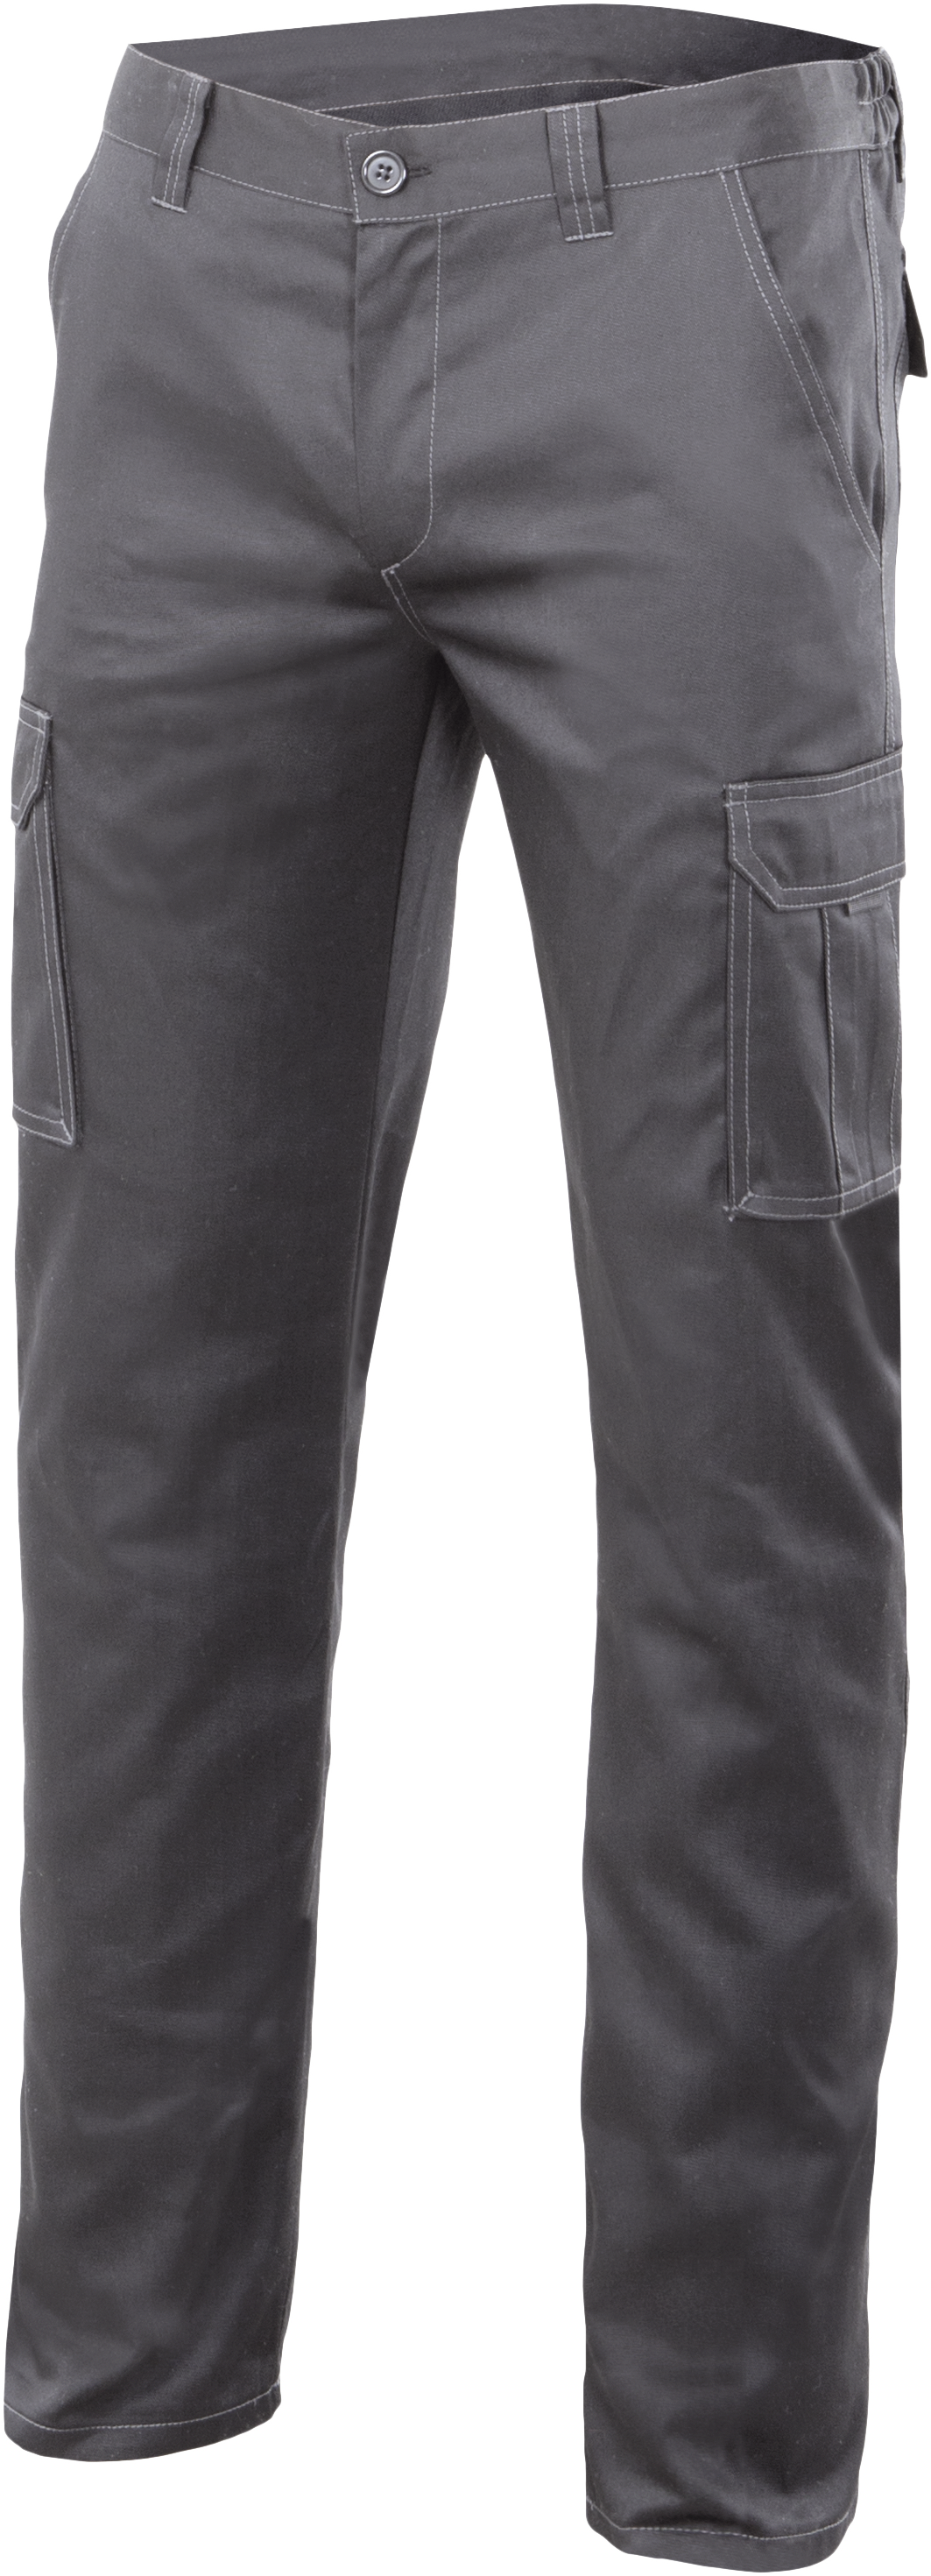 Pantalon gris 103002s txl